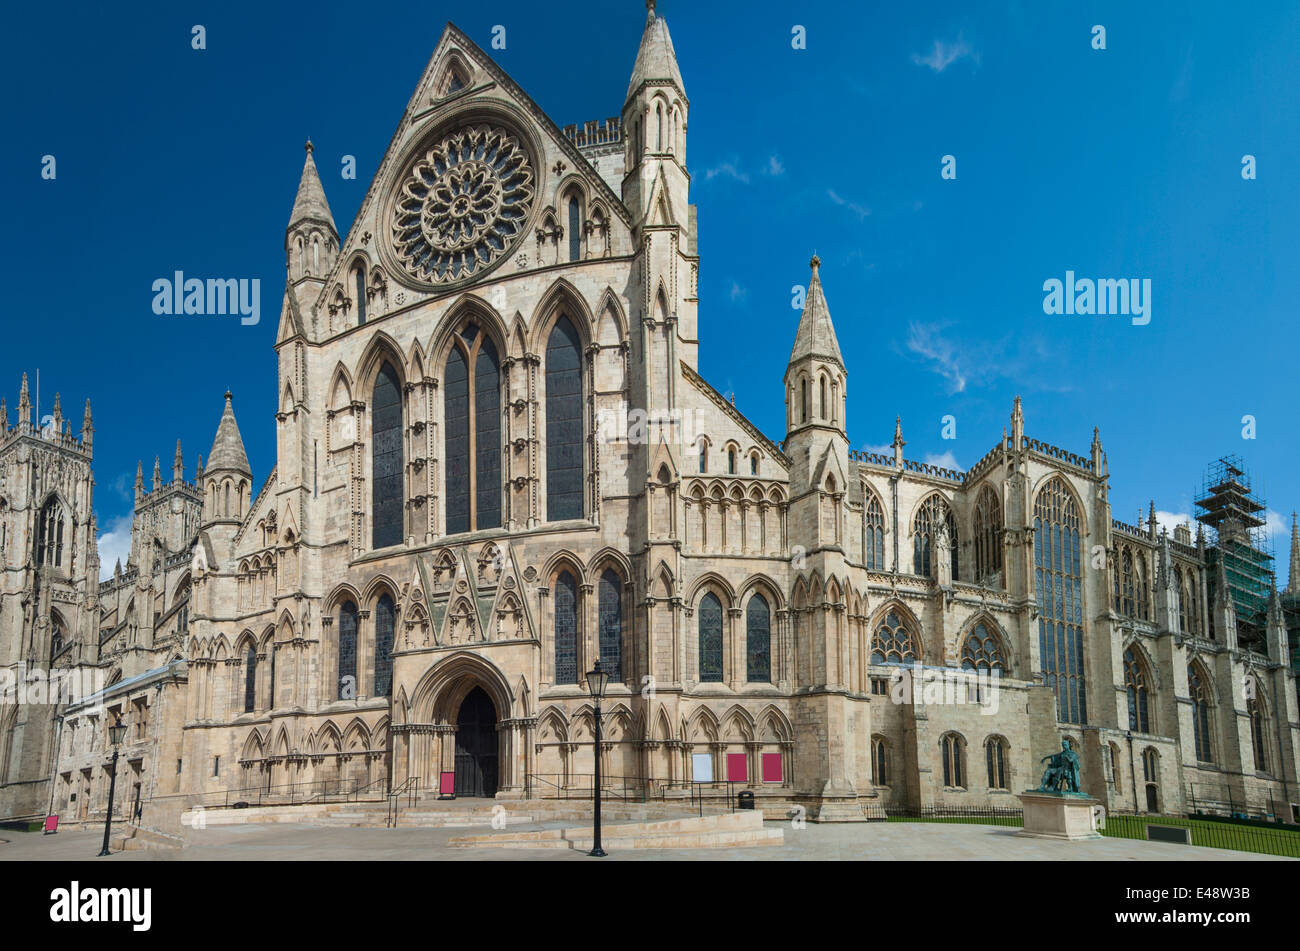 Famoso centro medievale inglese cattedrale nel centro della città Foto Stock